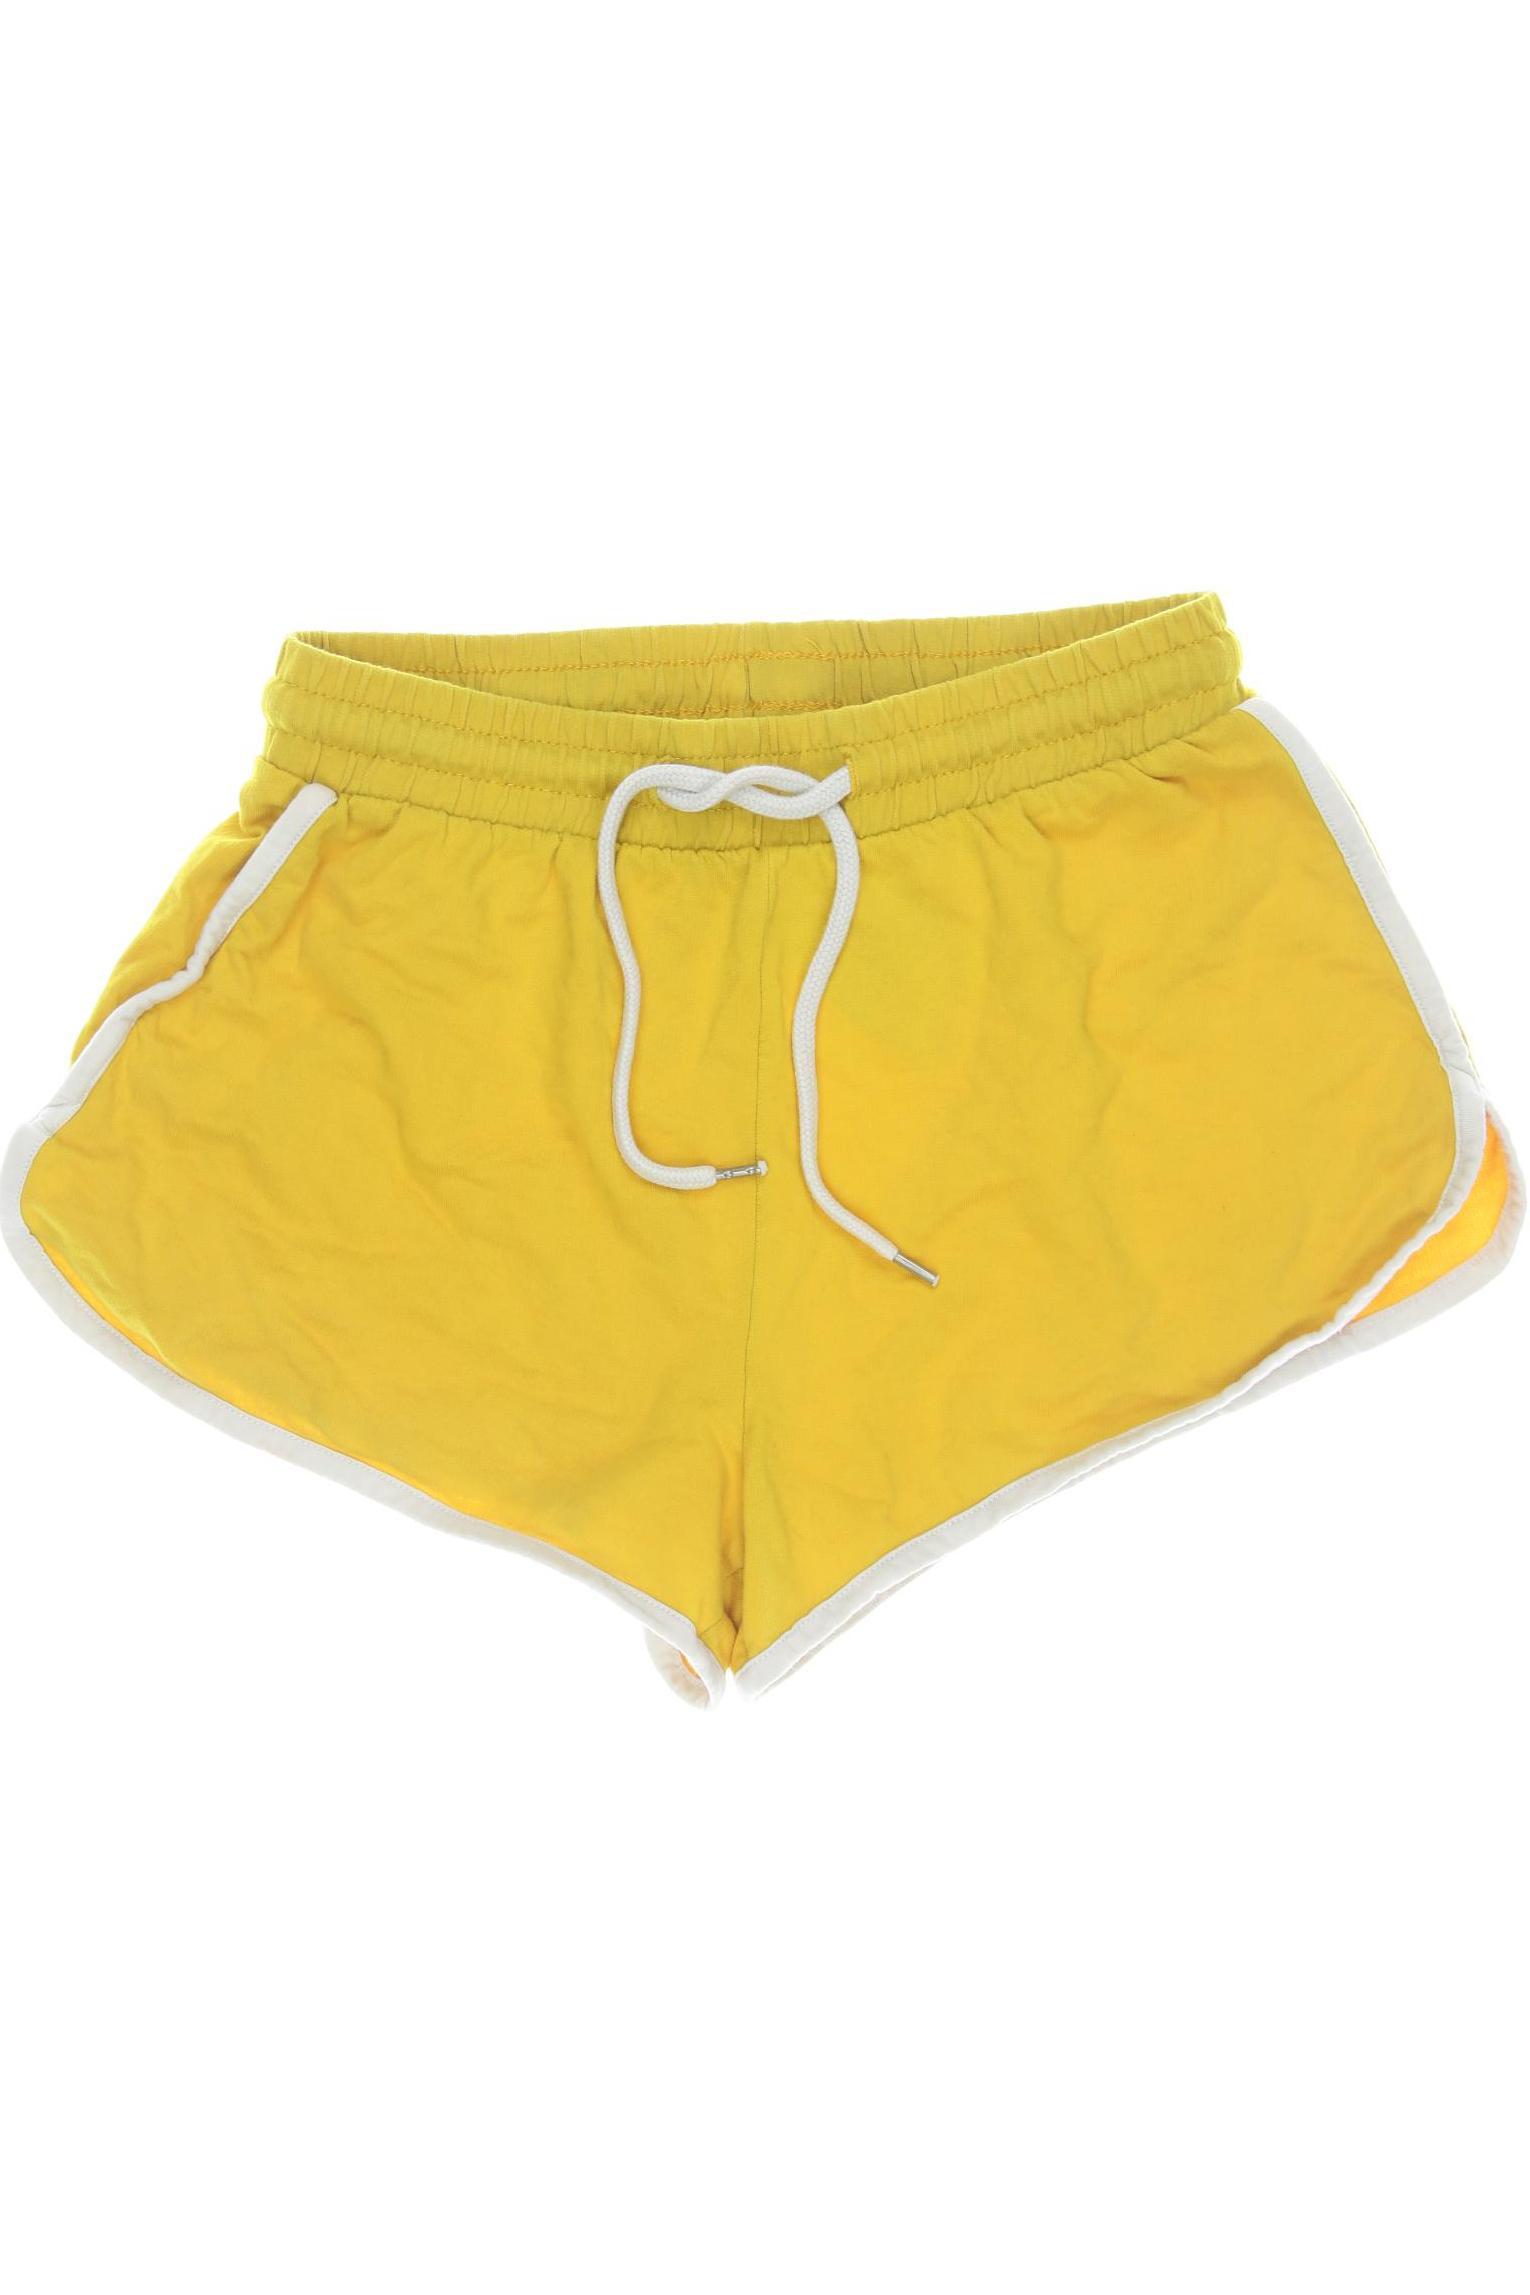 MONKI Damen Shorts, gelb von Monki